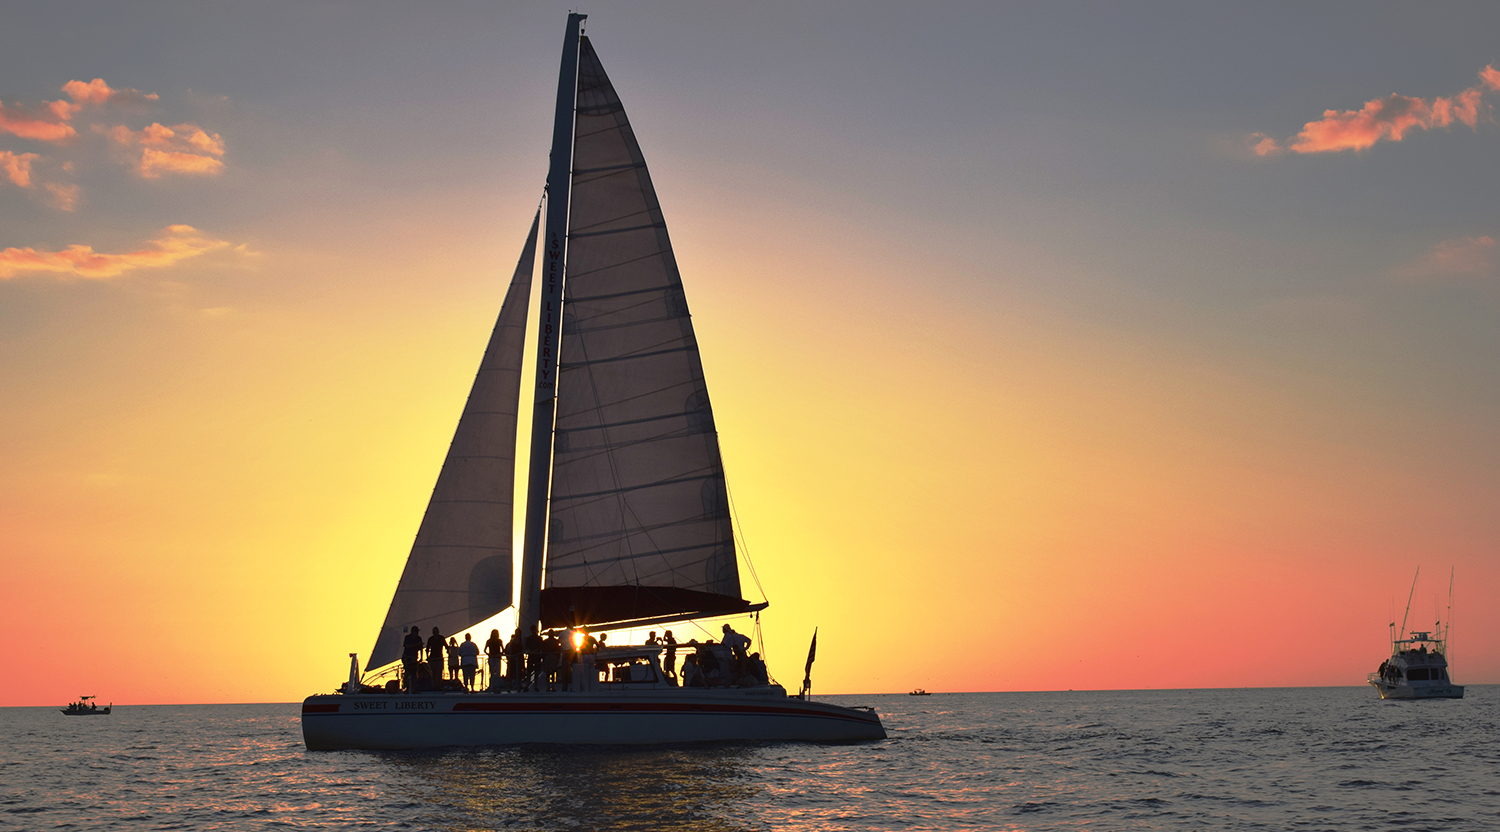 sunset boat cruise naples fl